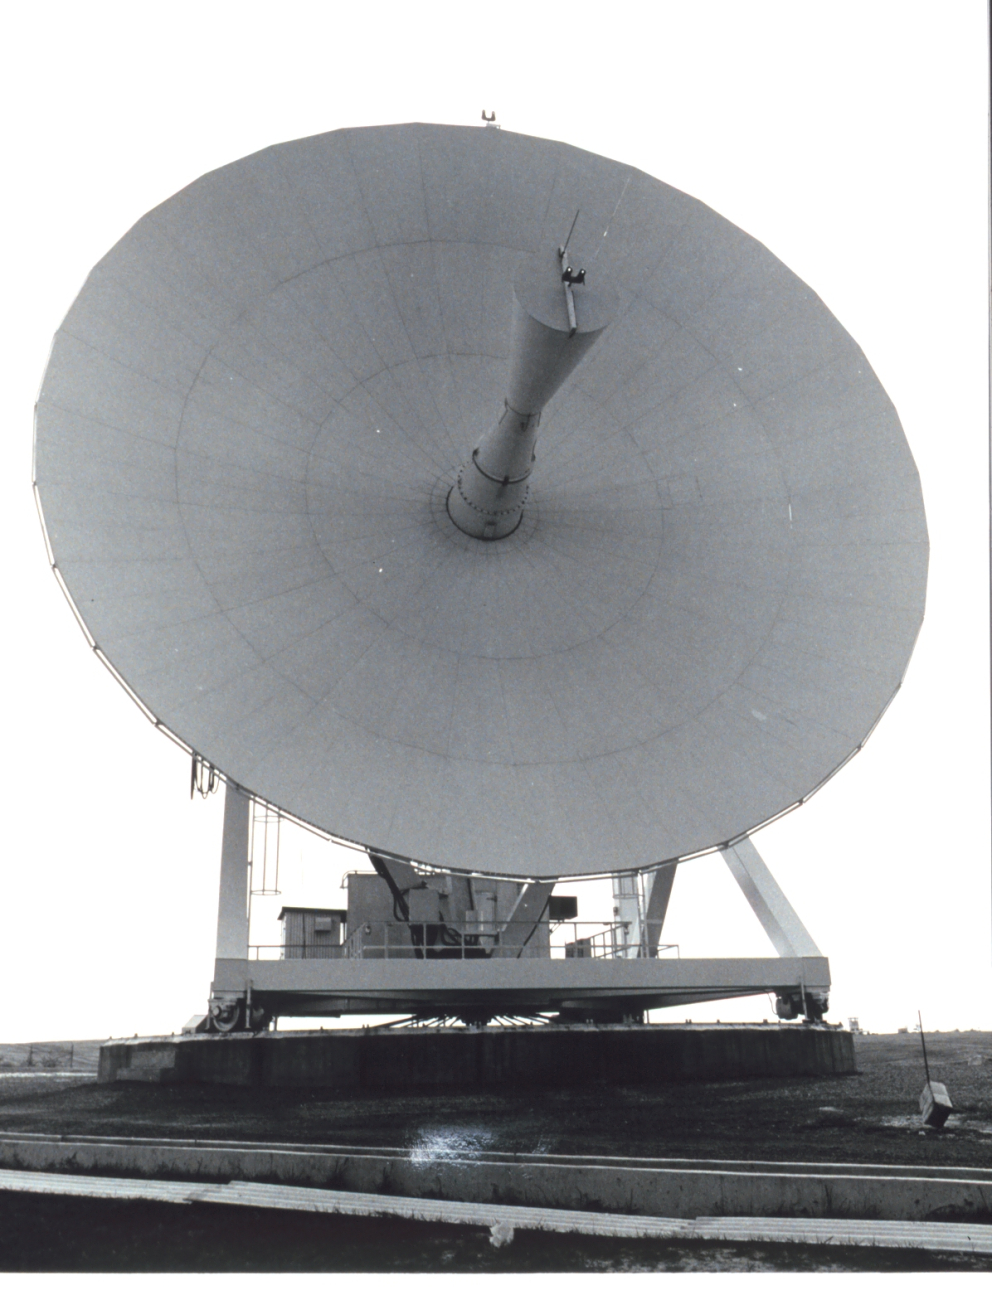 A parabolic antenna at Wallops Island